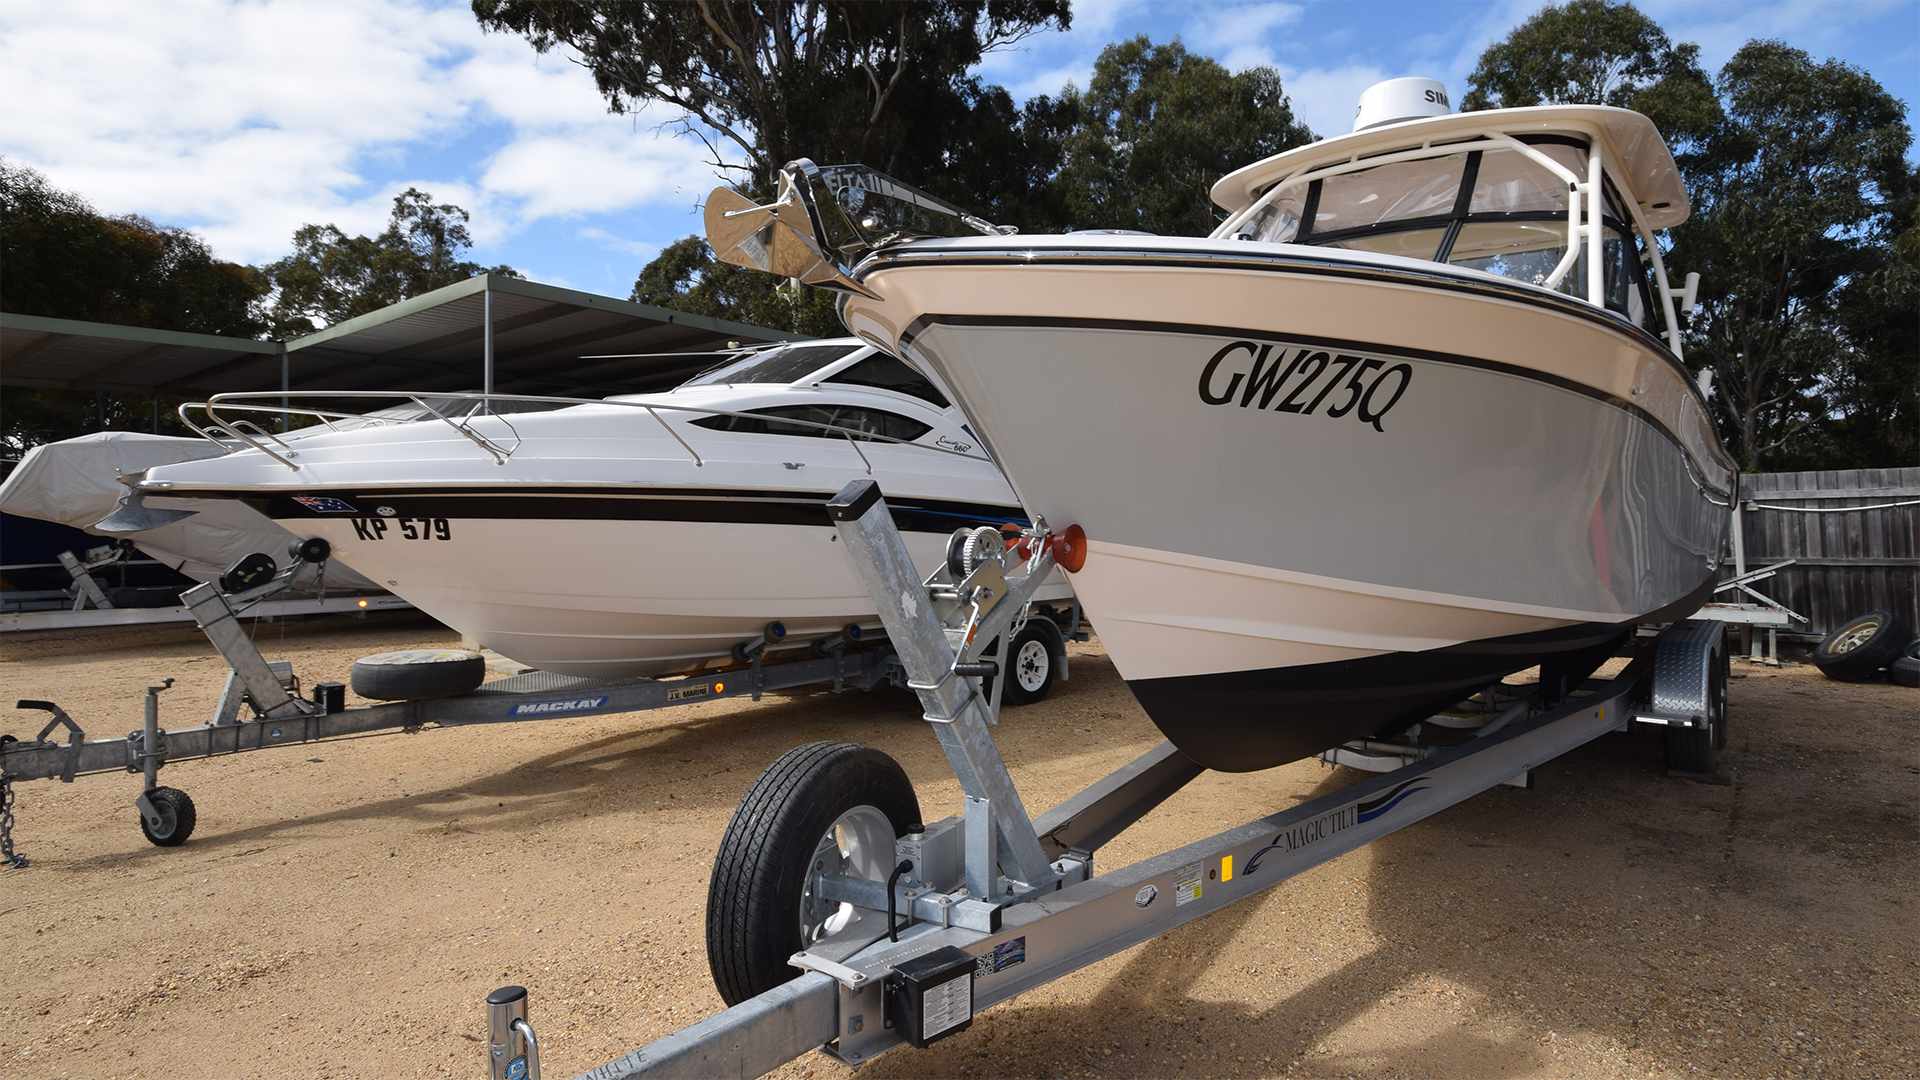 Boat Caravan and Trailer Maintenance